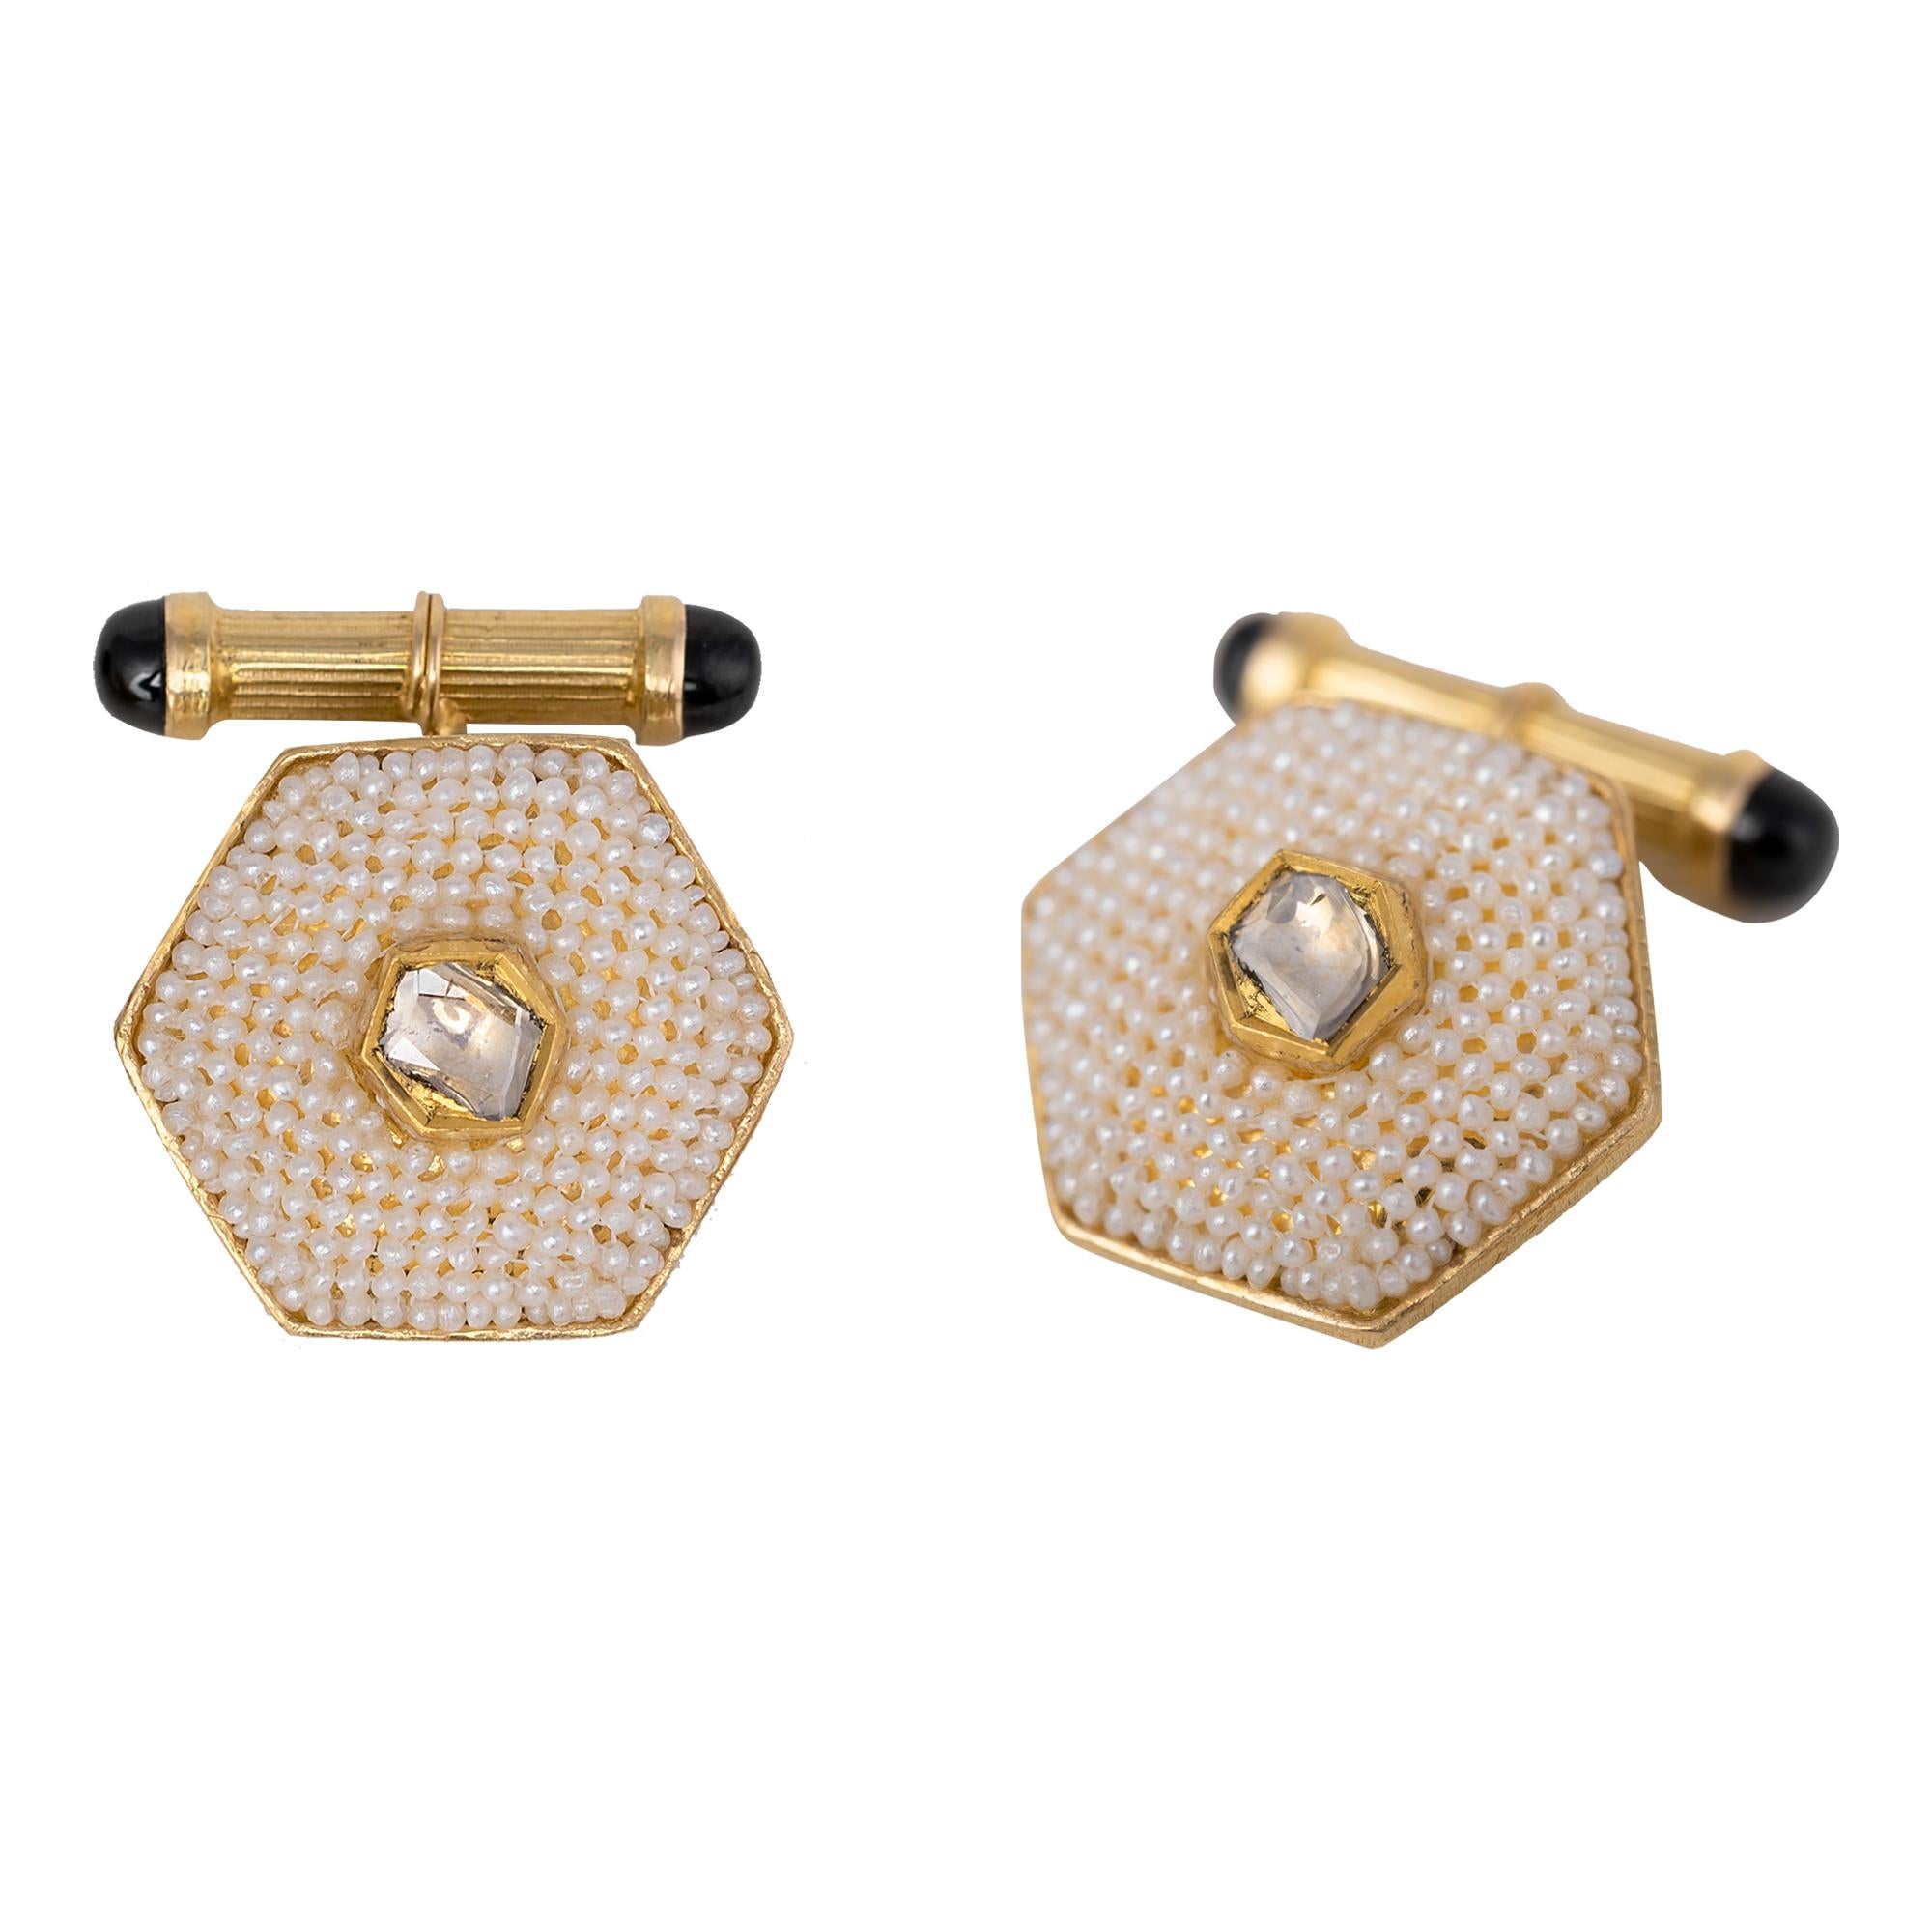 Boutons de manchette en or jaune 18 carats, diamants et perles
Ce bouton de manchette sophistiqué, inspiré du XIXe siècle, en perle blanc cassé et diamant polki, est immaculé. Le centre est constitué d'un solitaire en diamant polki de taille